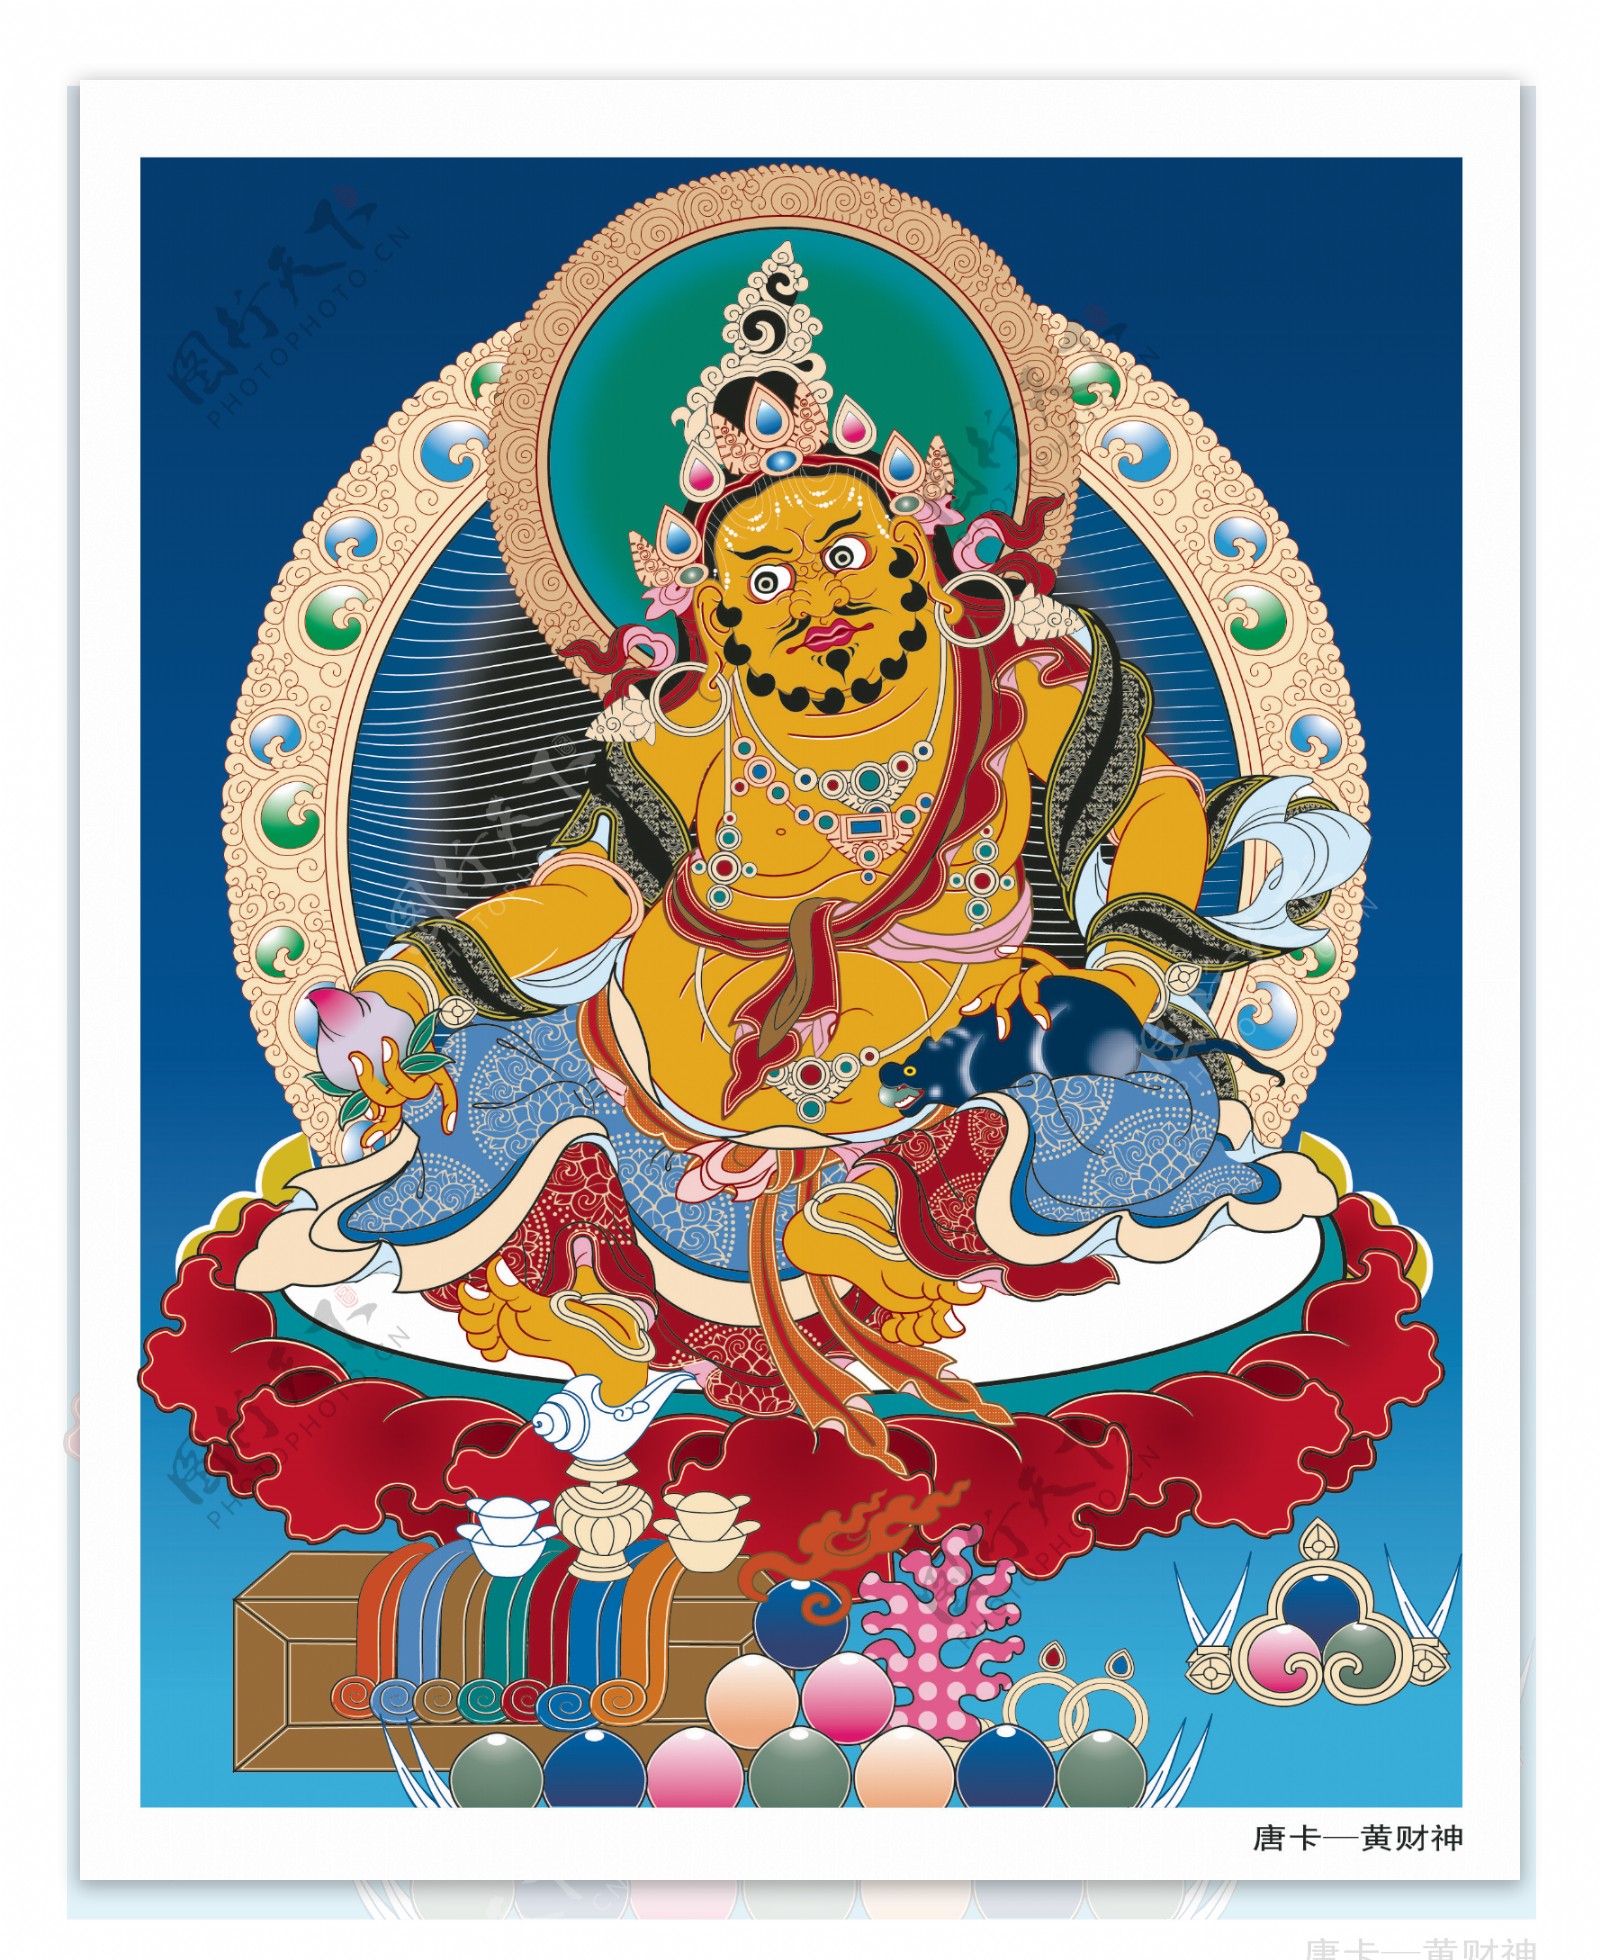 黄财神，藏名藏拉色波，是密教之护法神祗，诸财神之首……